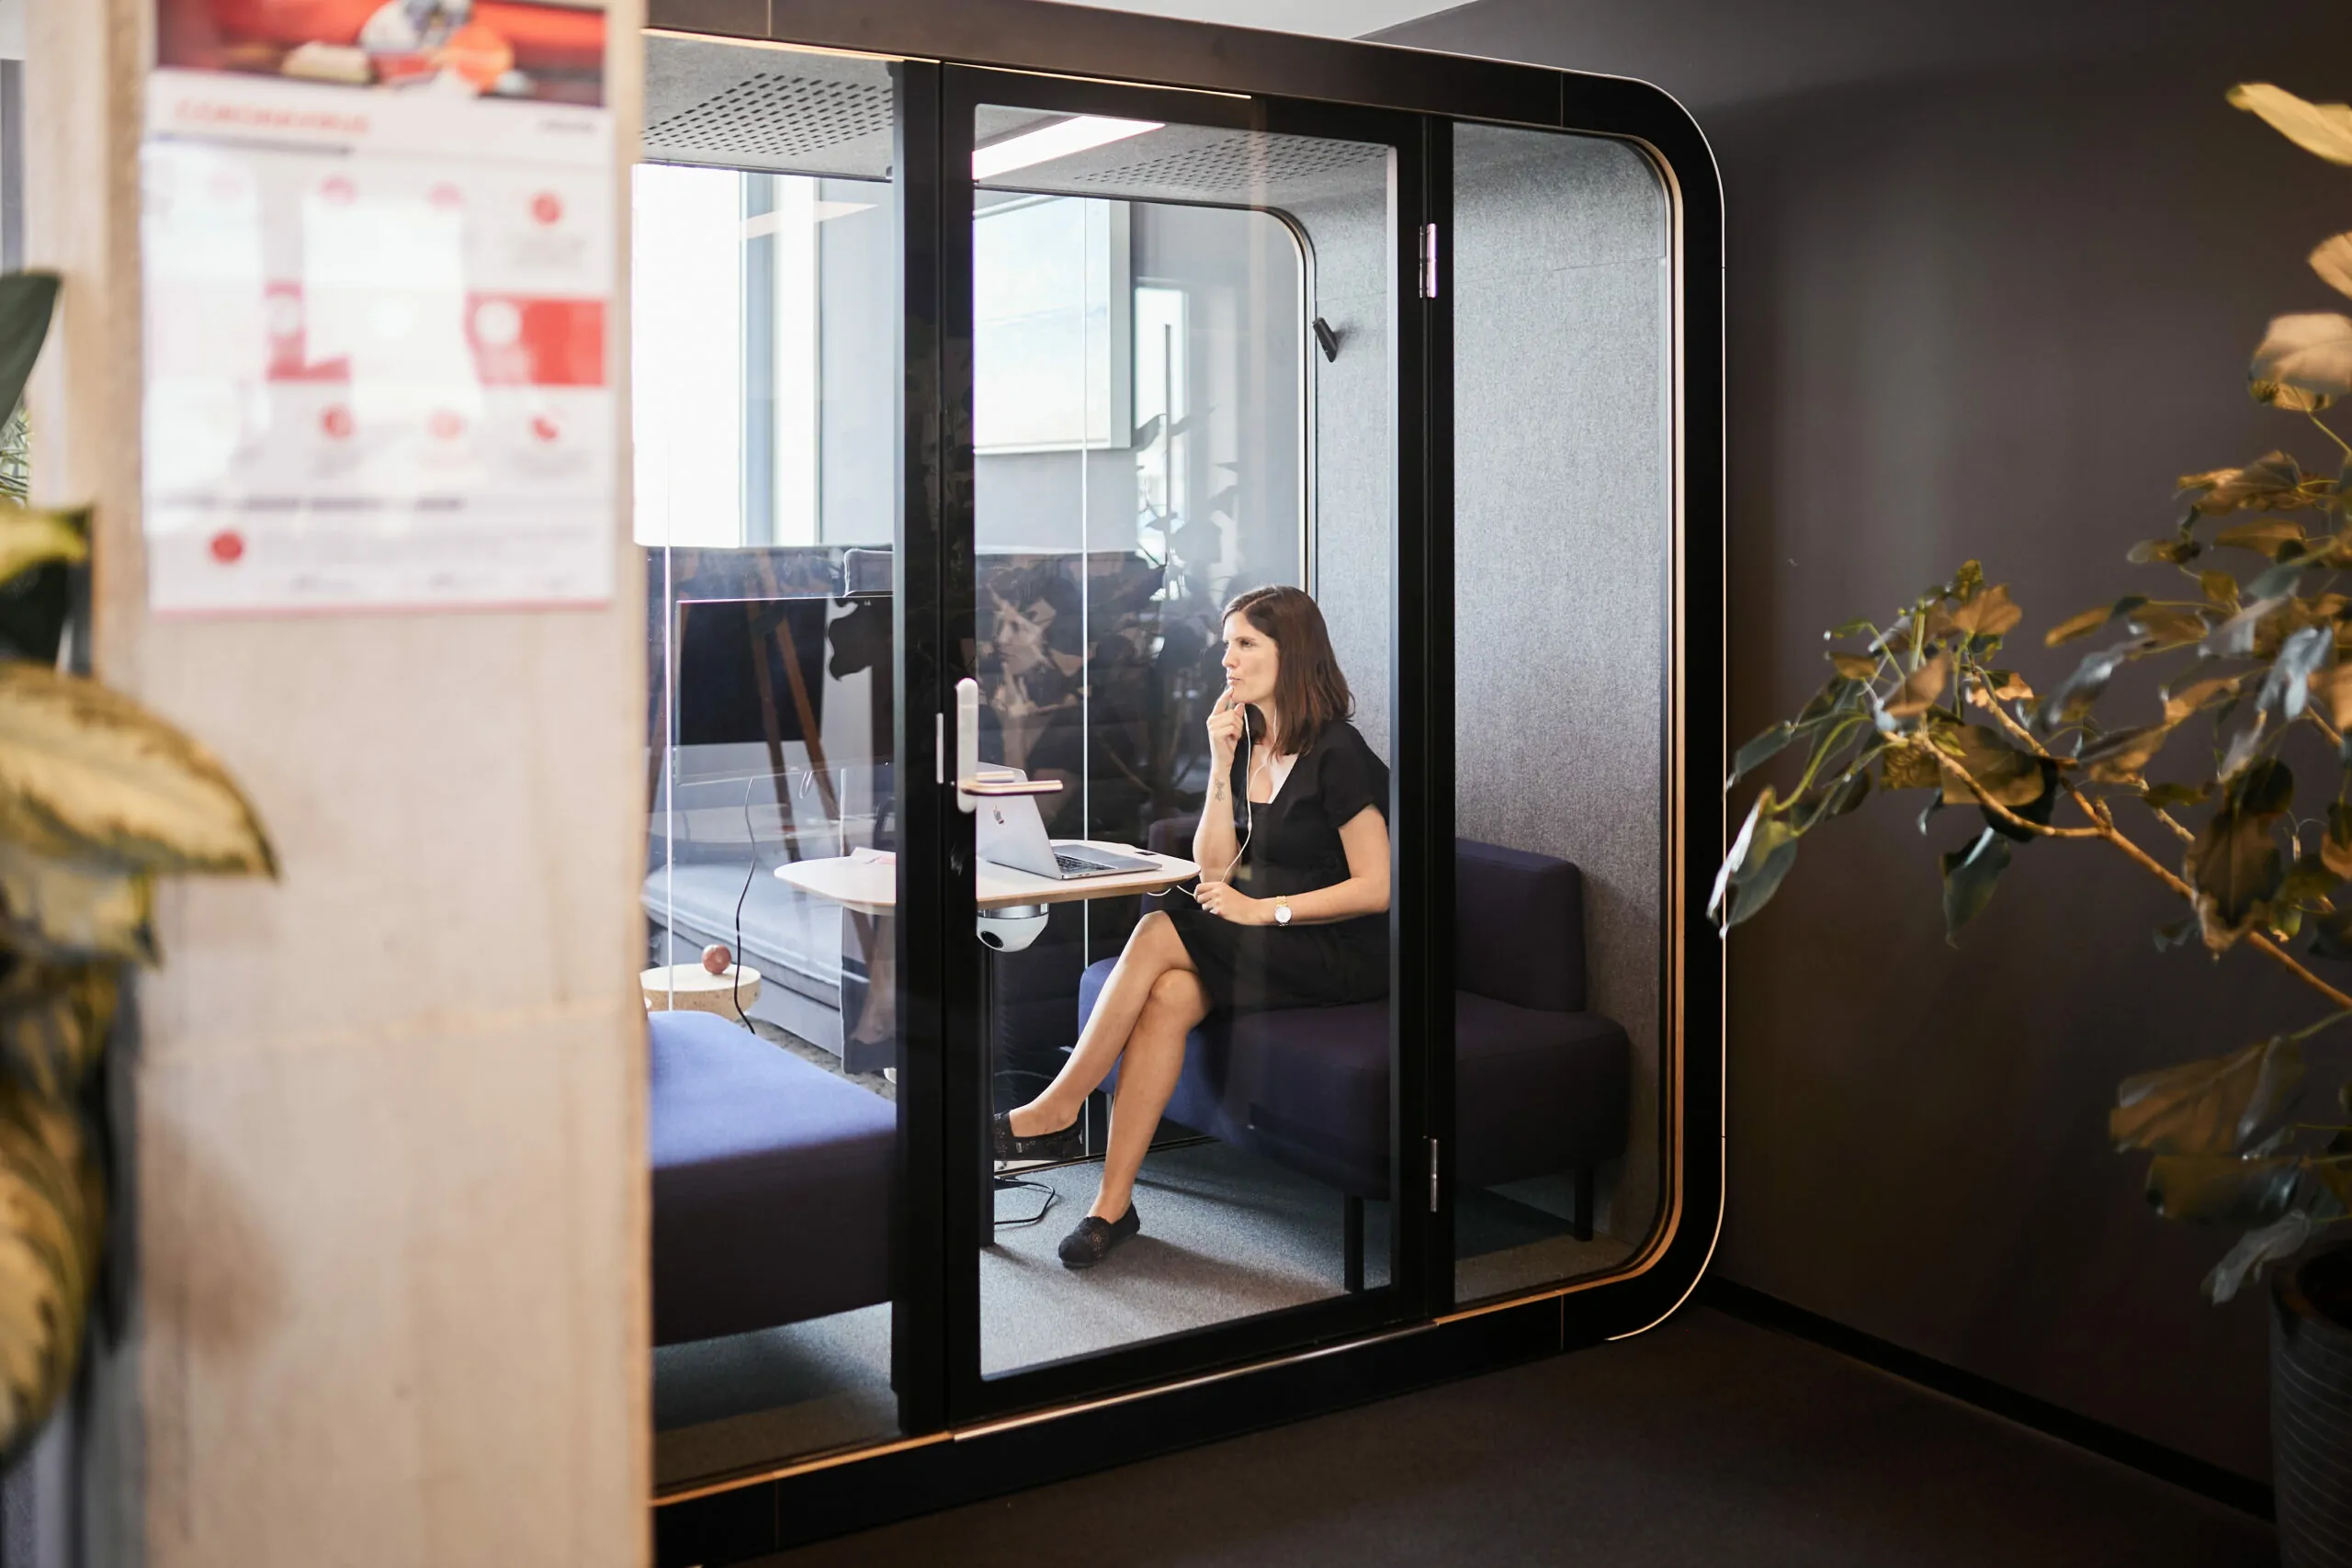 Foto von einer valantic-CX-Angestellten, die in einer Büro-Telefonzelle ein Telefonat über Customer Experience führt.